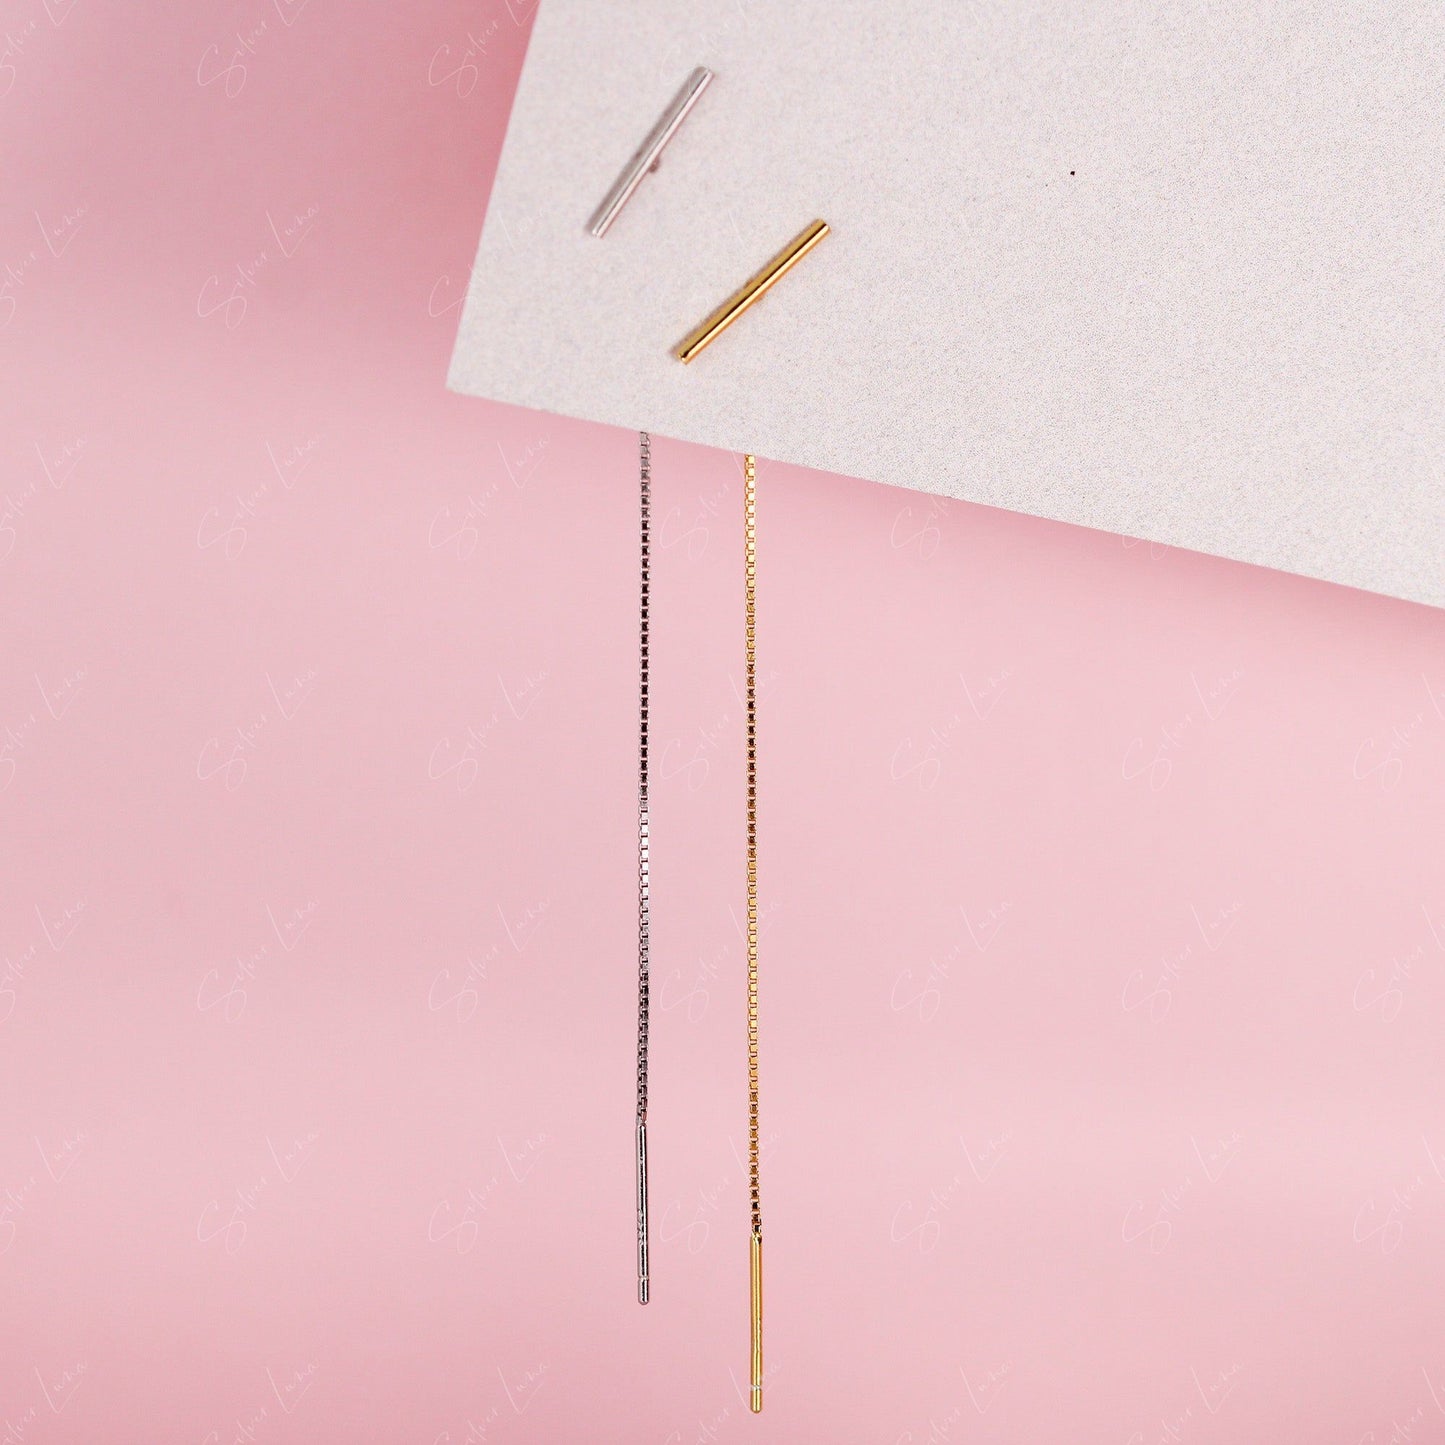 stick threader earrings